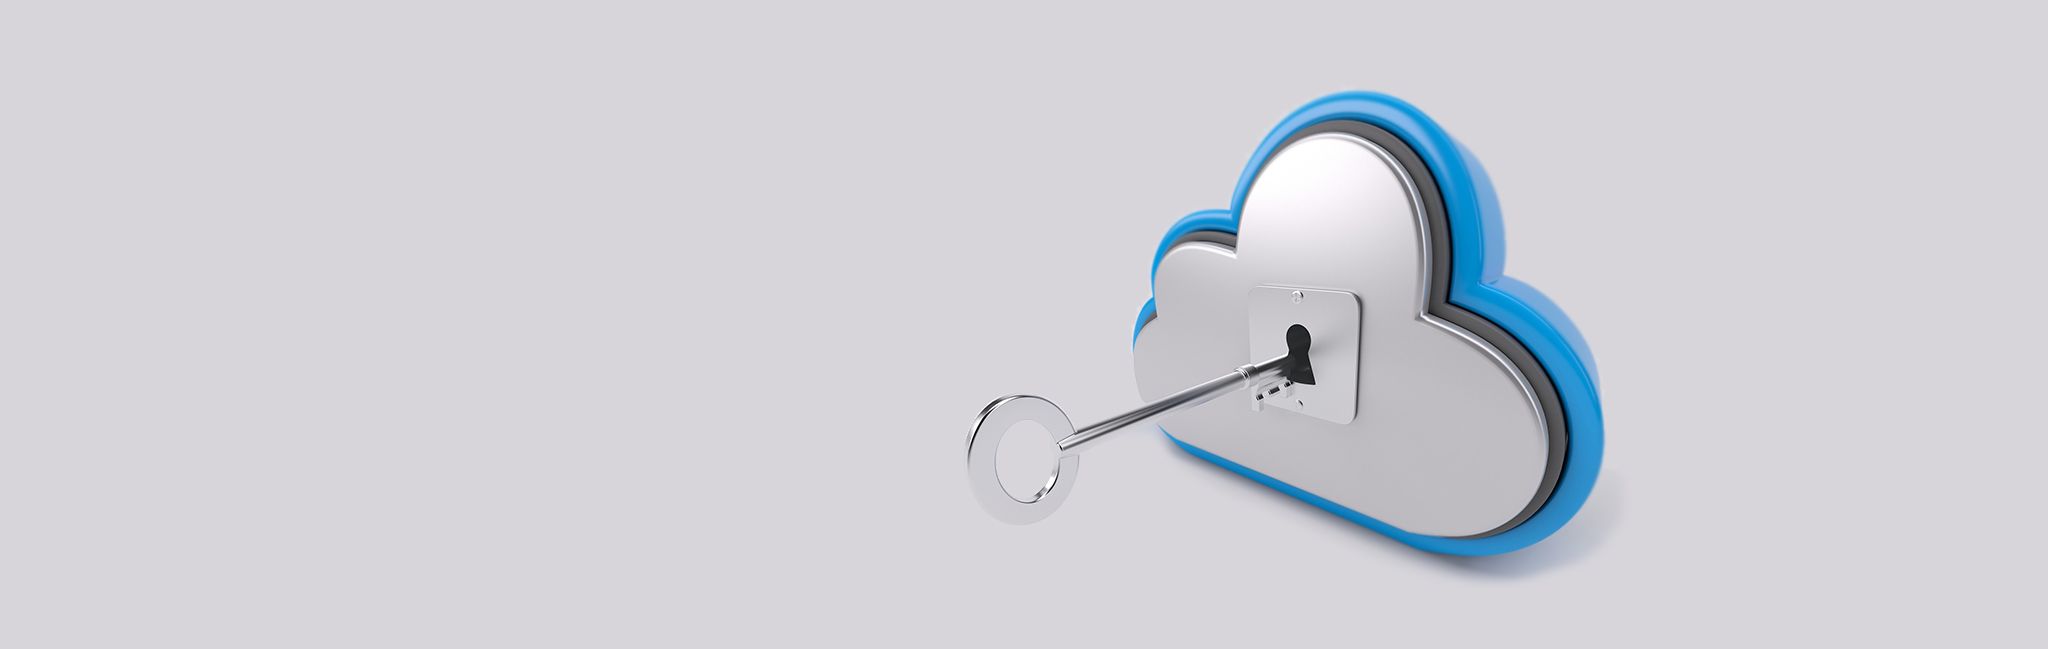 SERHS Serveis Cloud Ciberseguridad en la nube